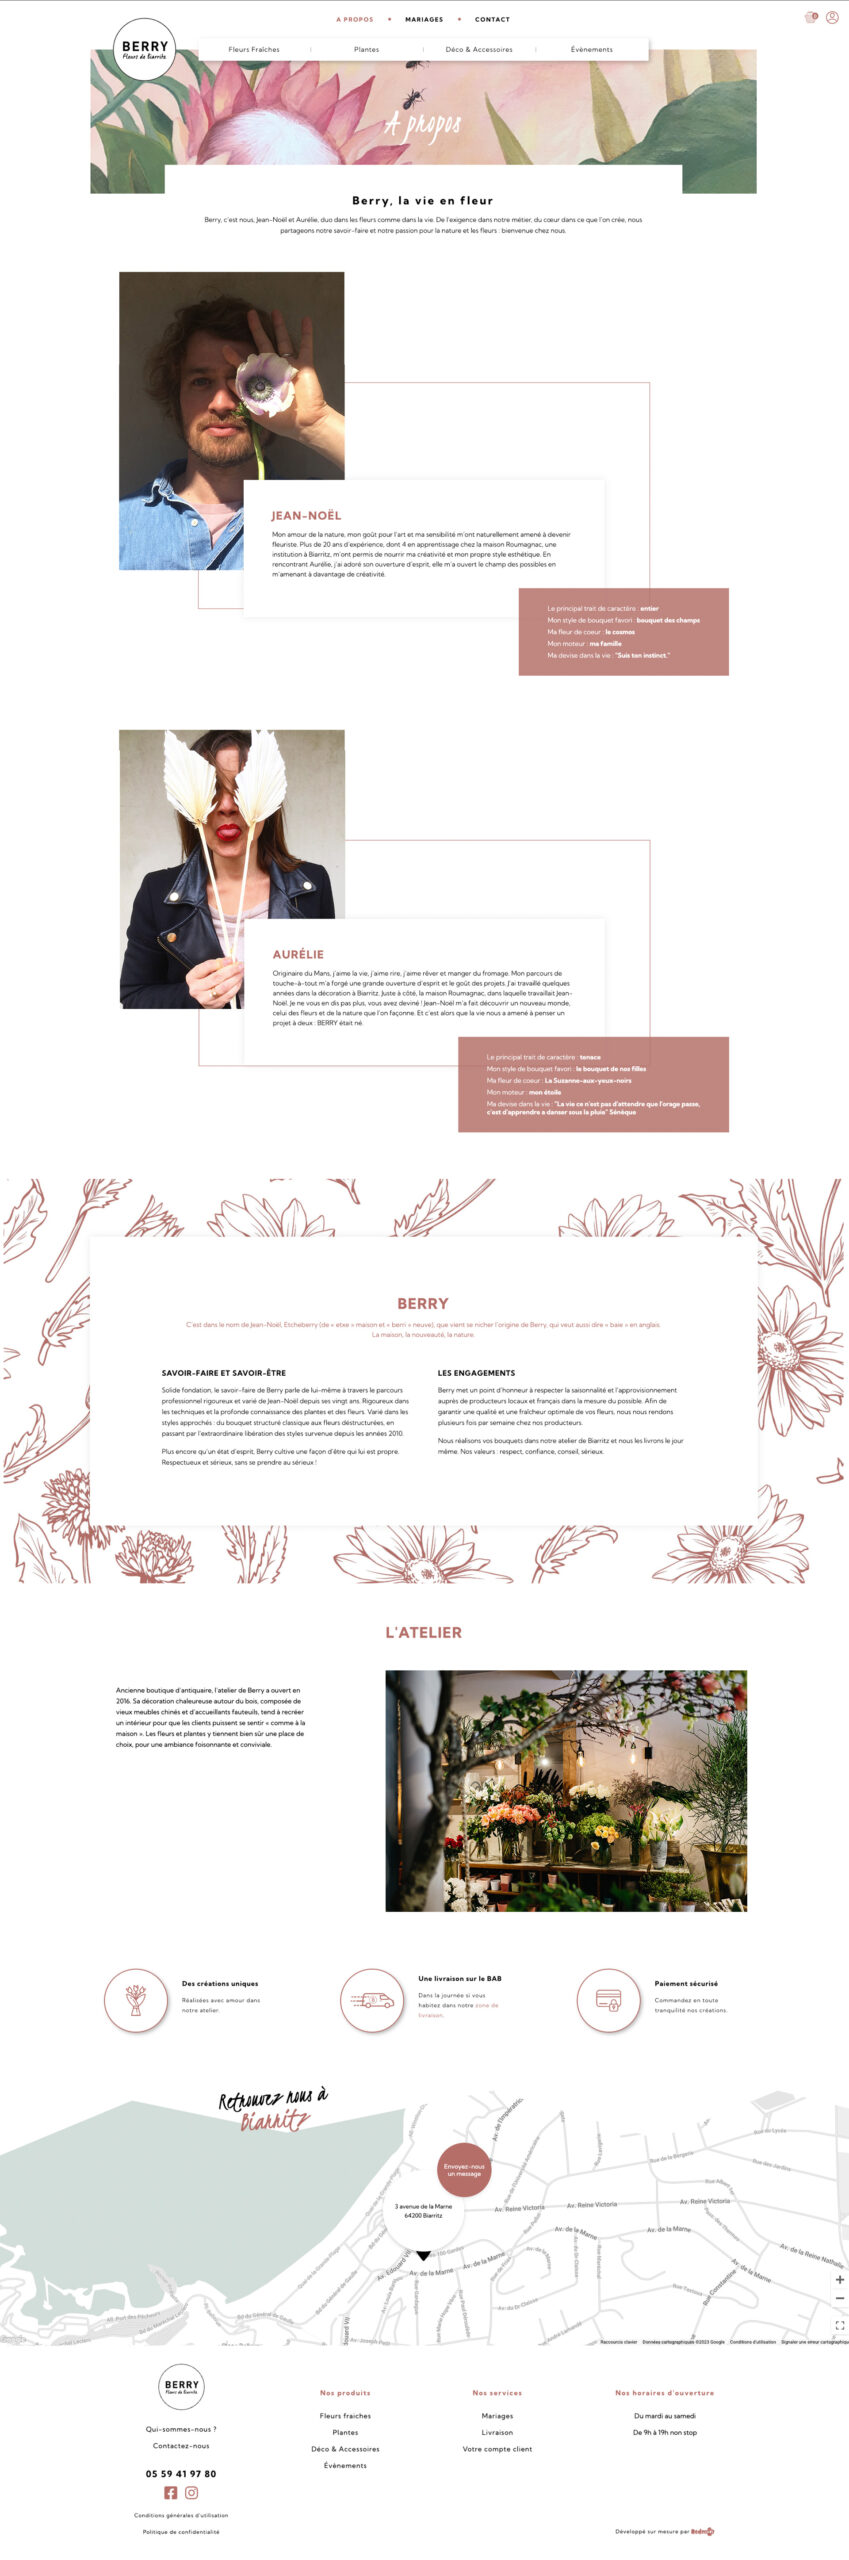 Design page à propos boutique de fleurs Berry Biarritz